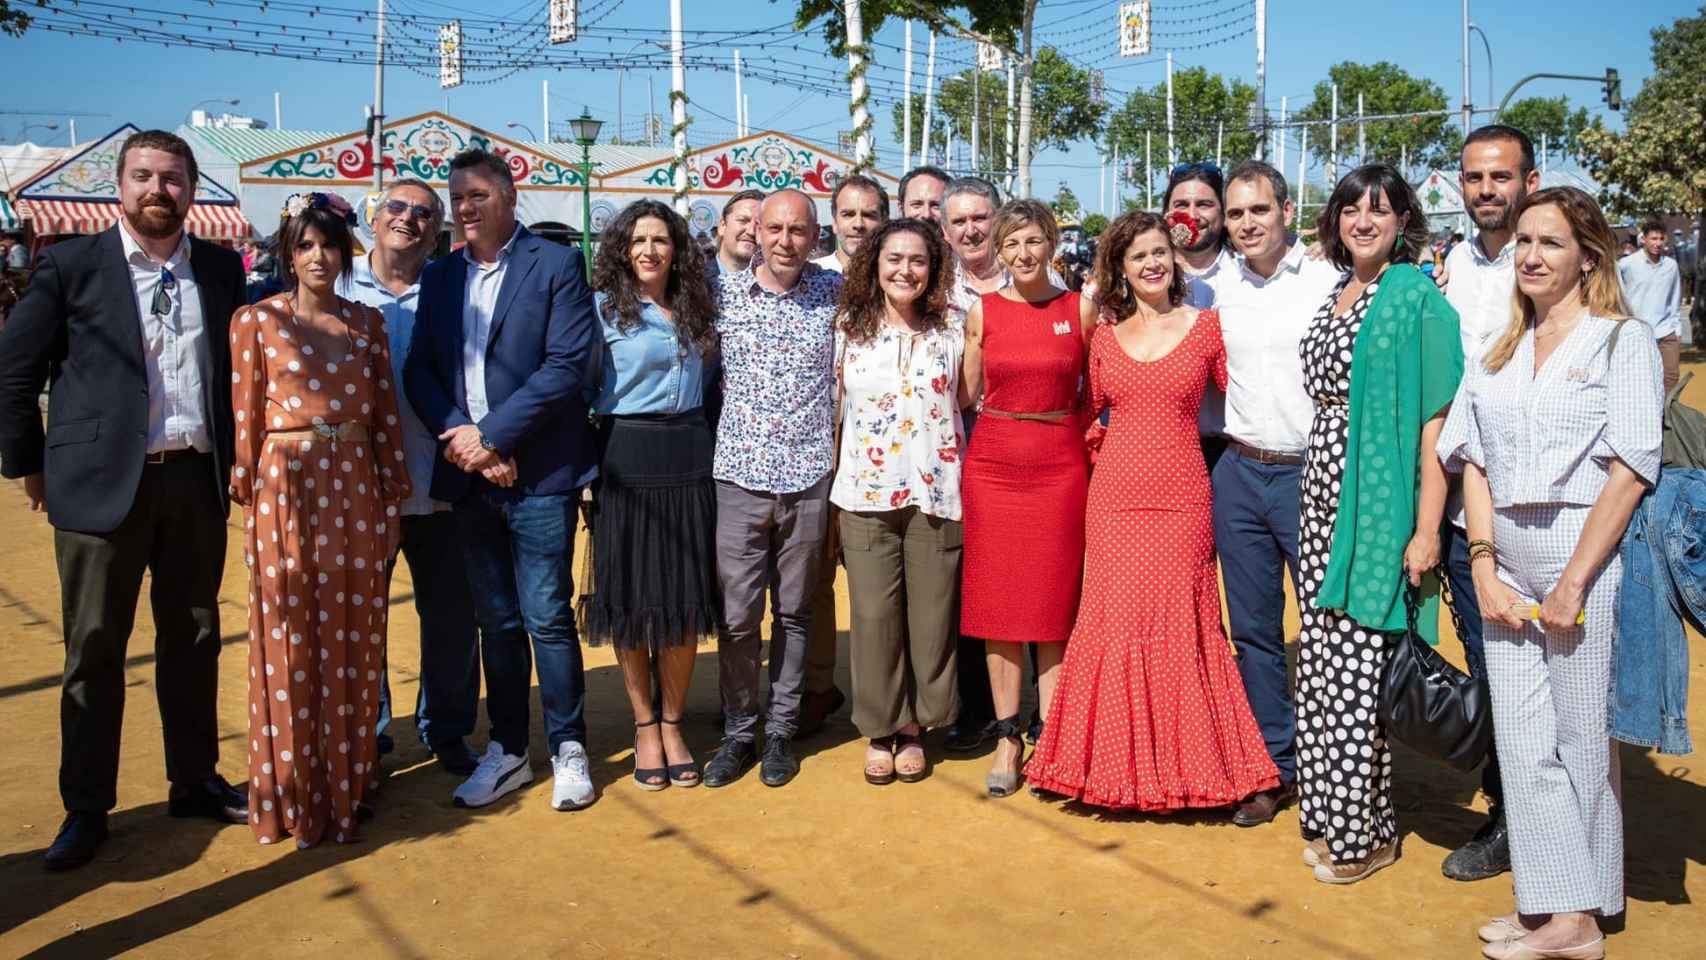 La vicepresidenta del Gobierno y ministra de Trabajo, Yolanda Díaz, en la feria de Sevilla junto a dirigentes de IU y Podemos.